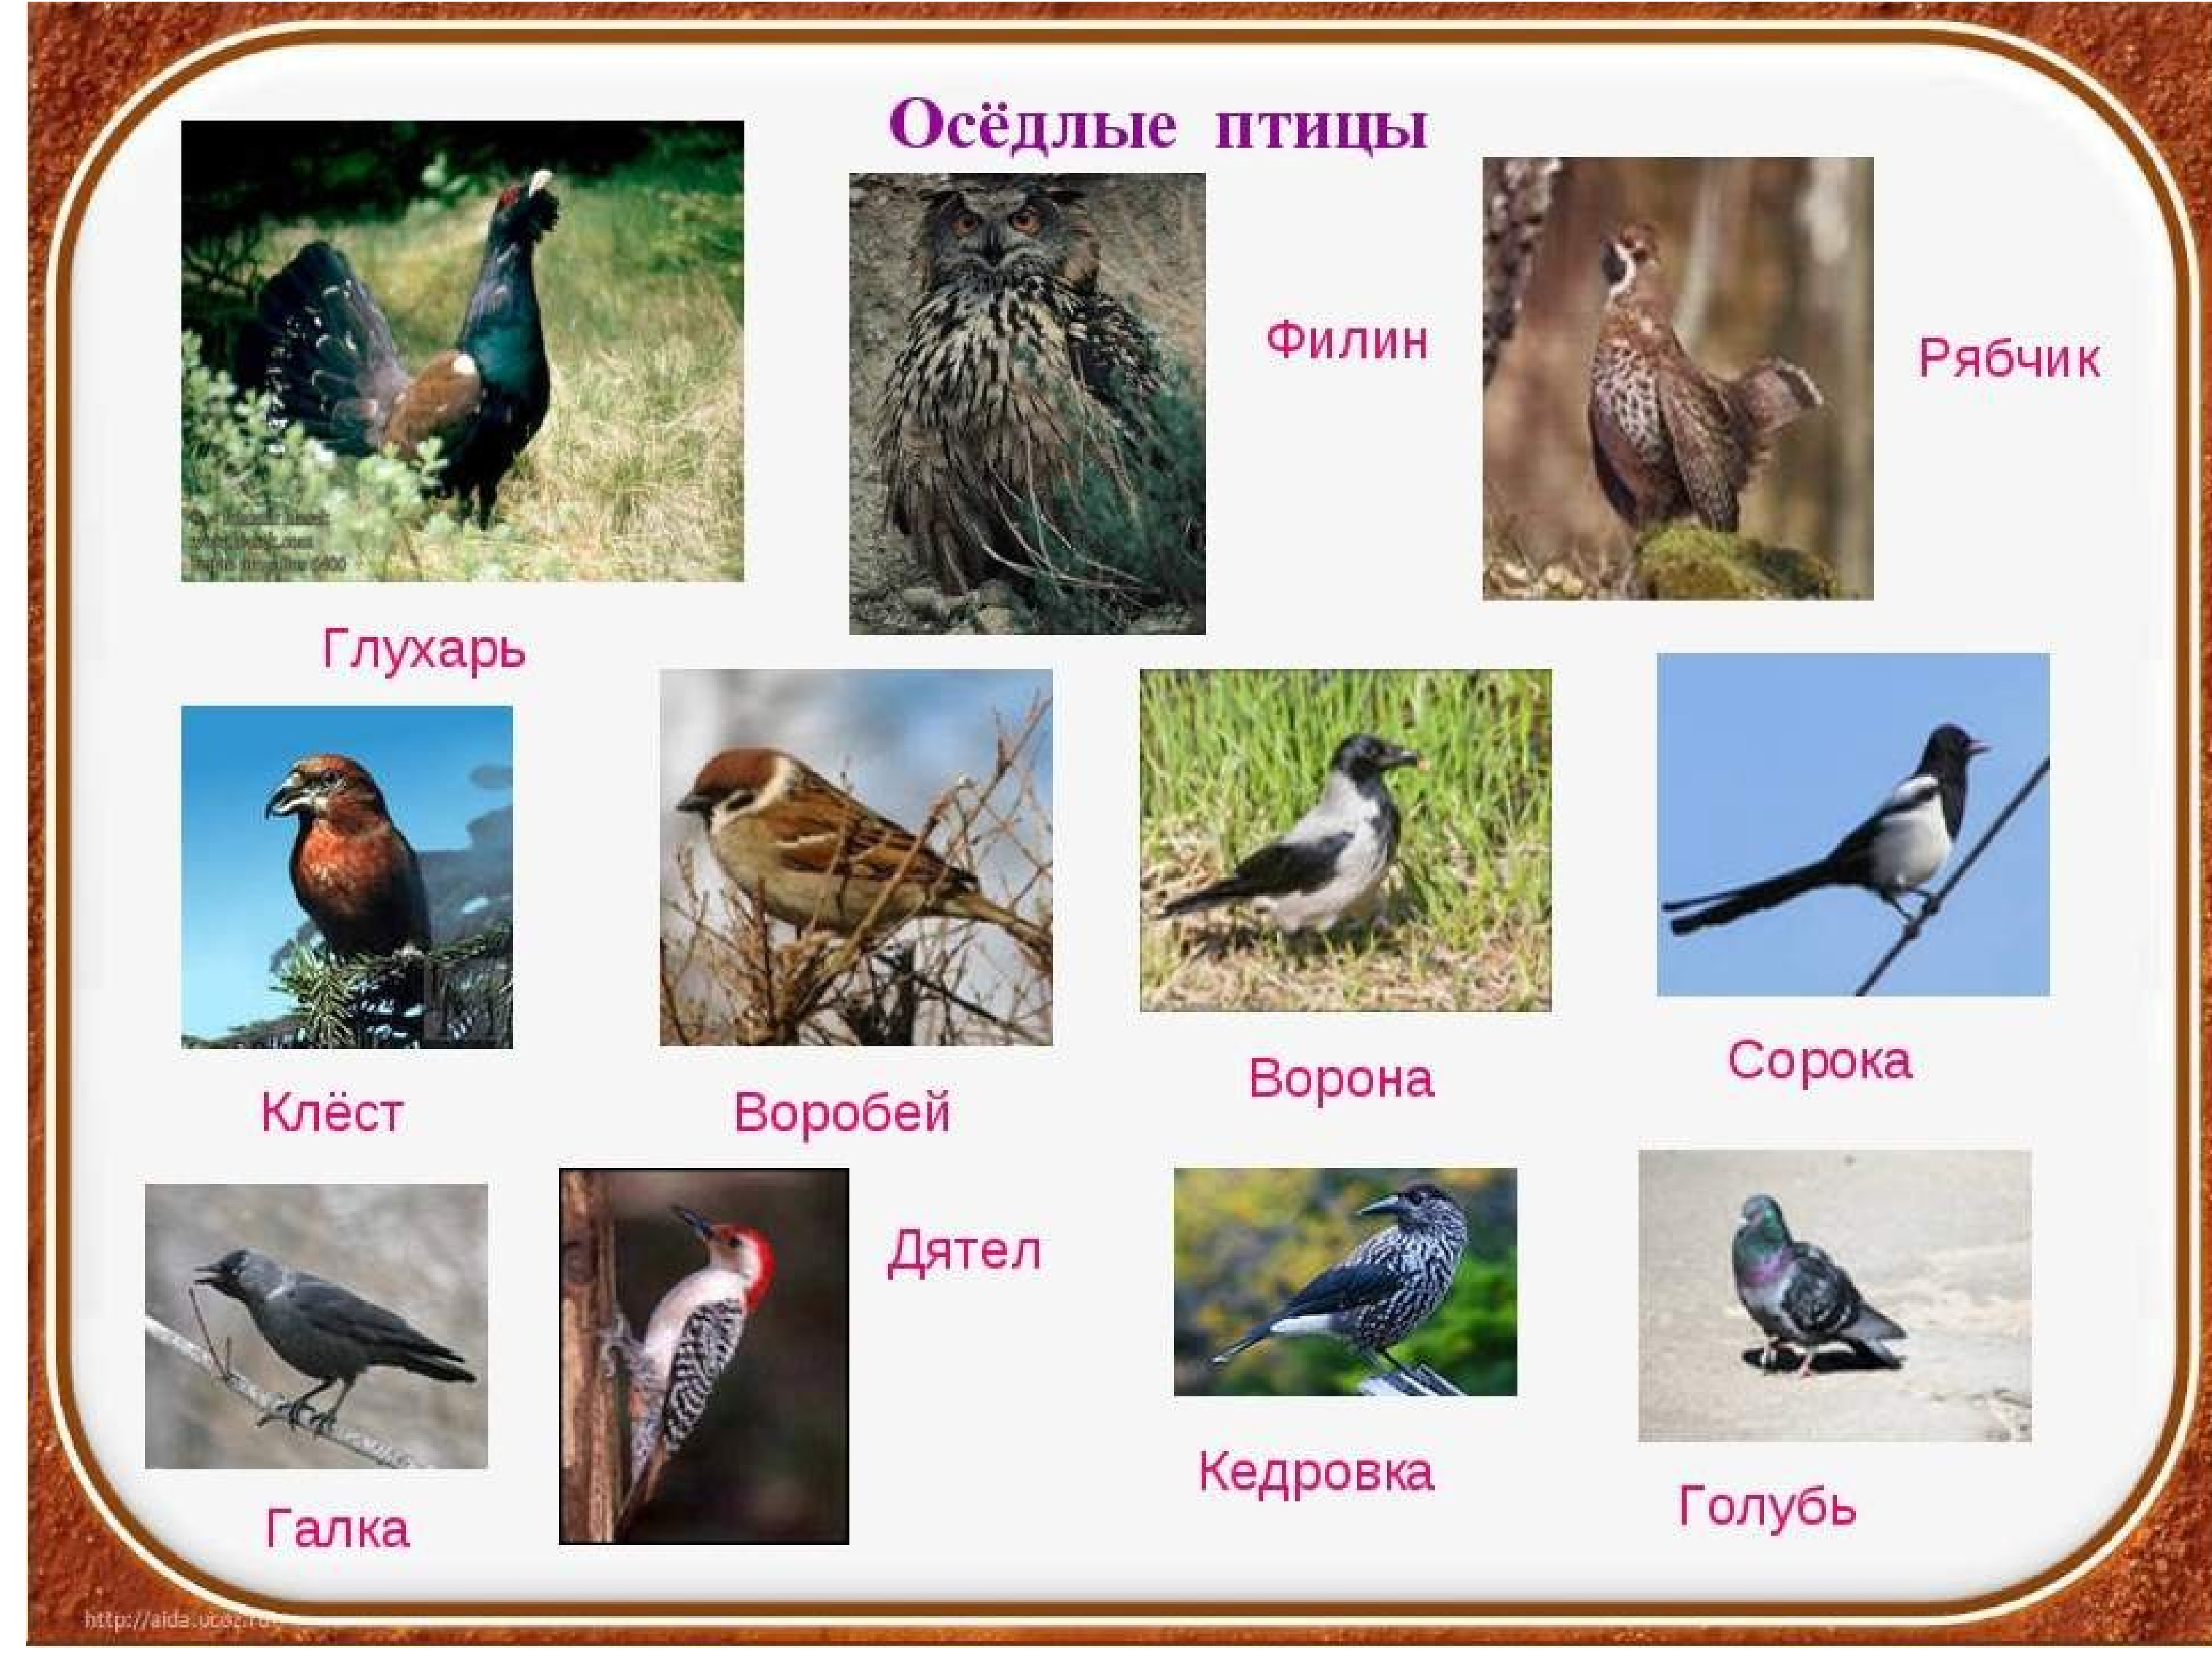 Осёдлые птицы список в России